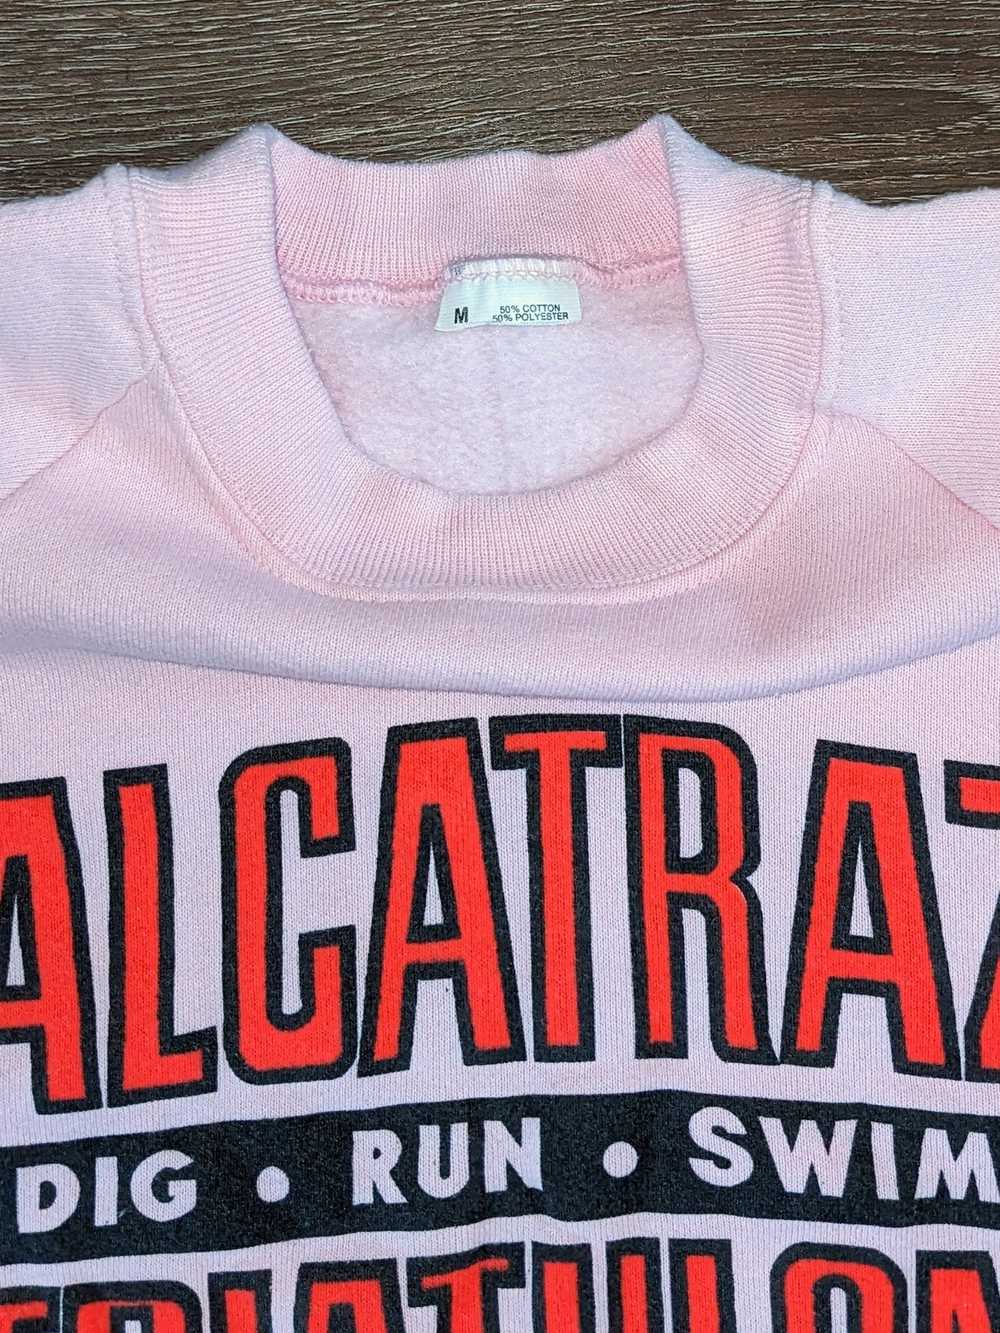 Vintage Vintage 80s Alcatraz Triathlon raglan swe… - image 3